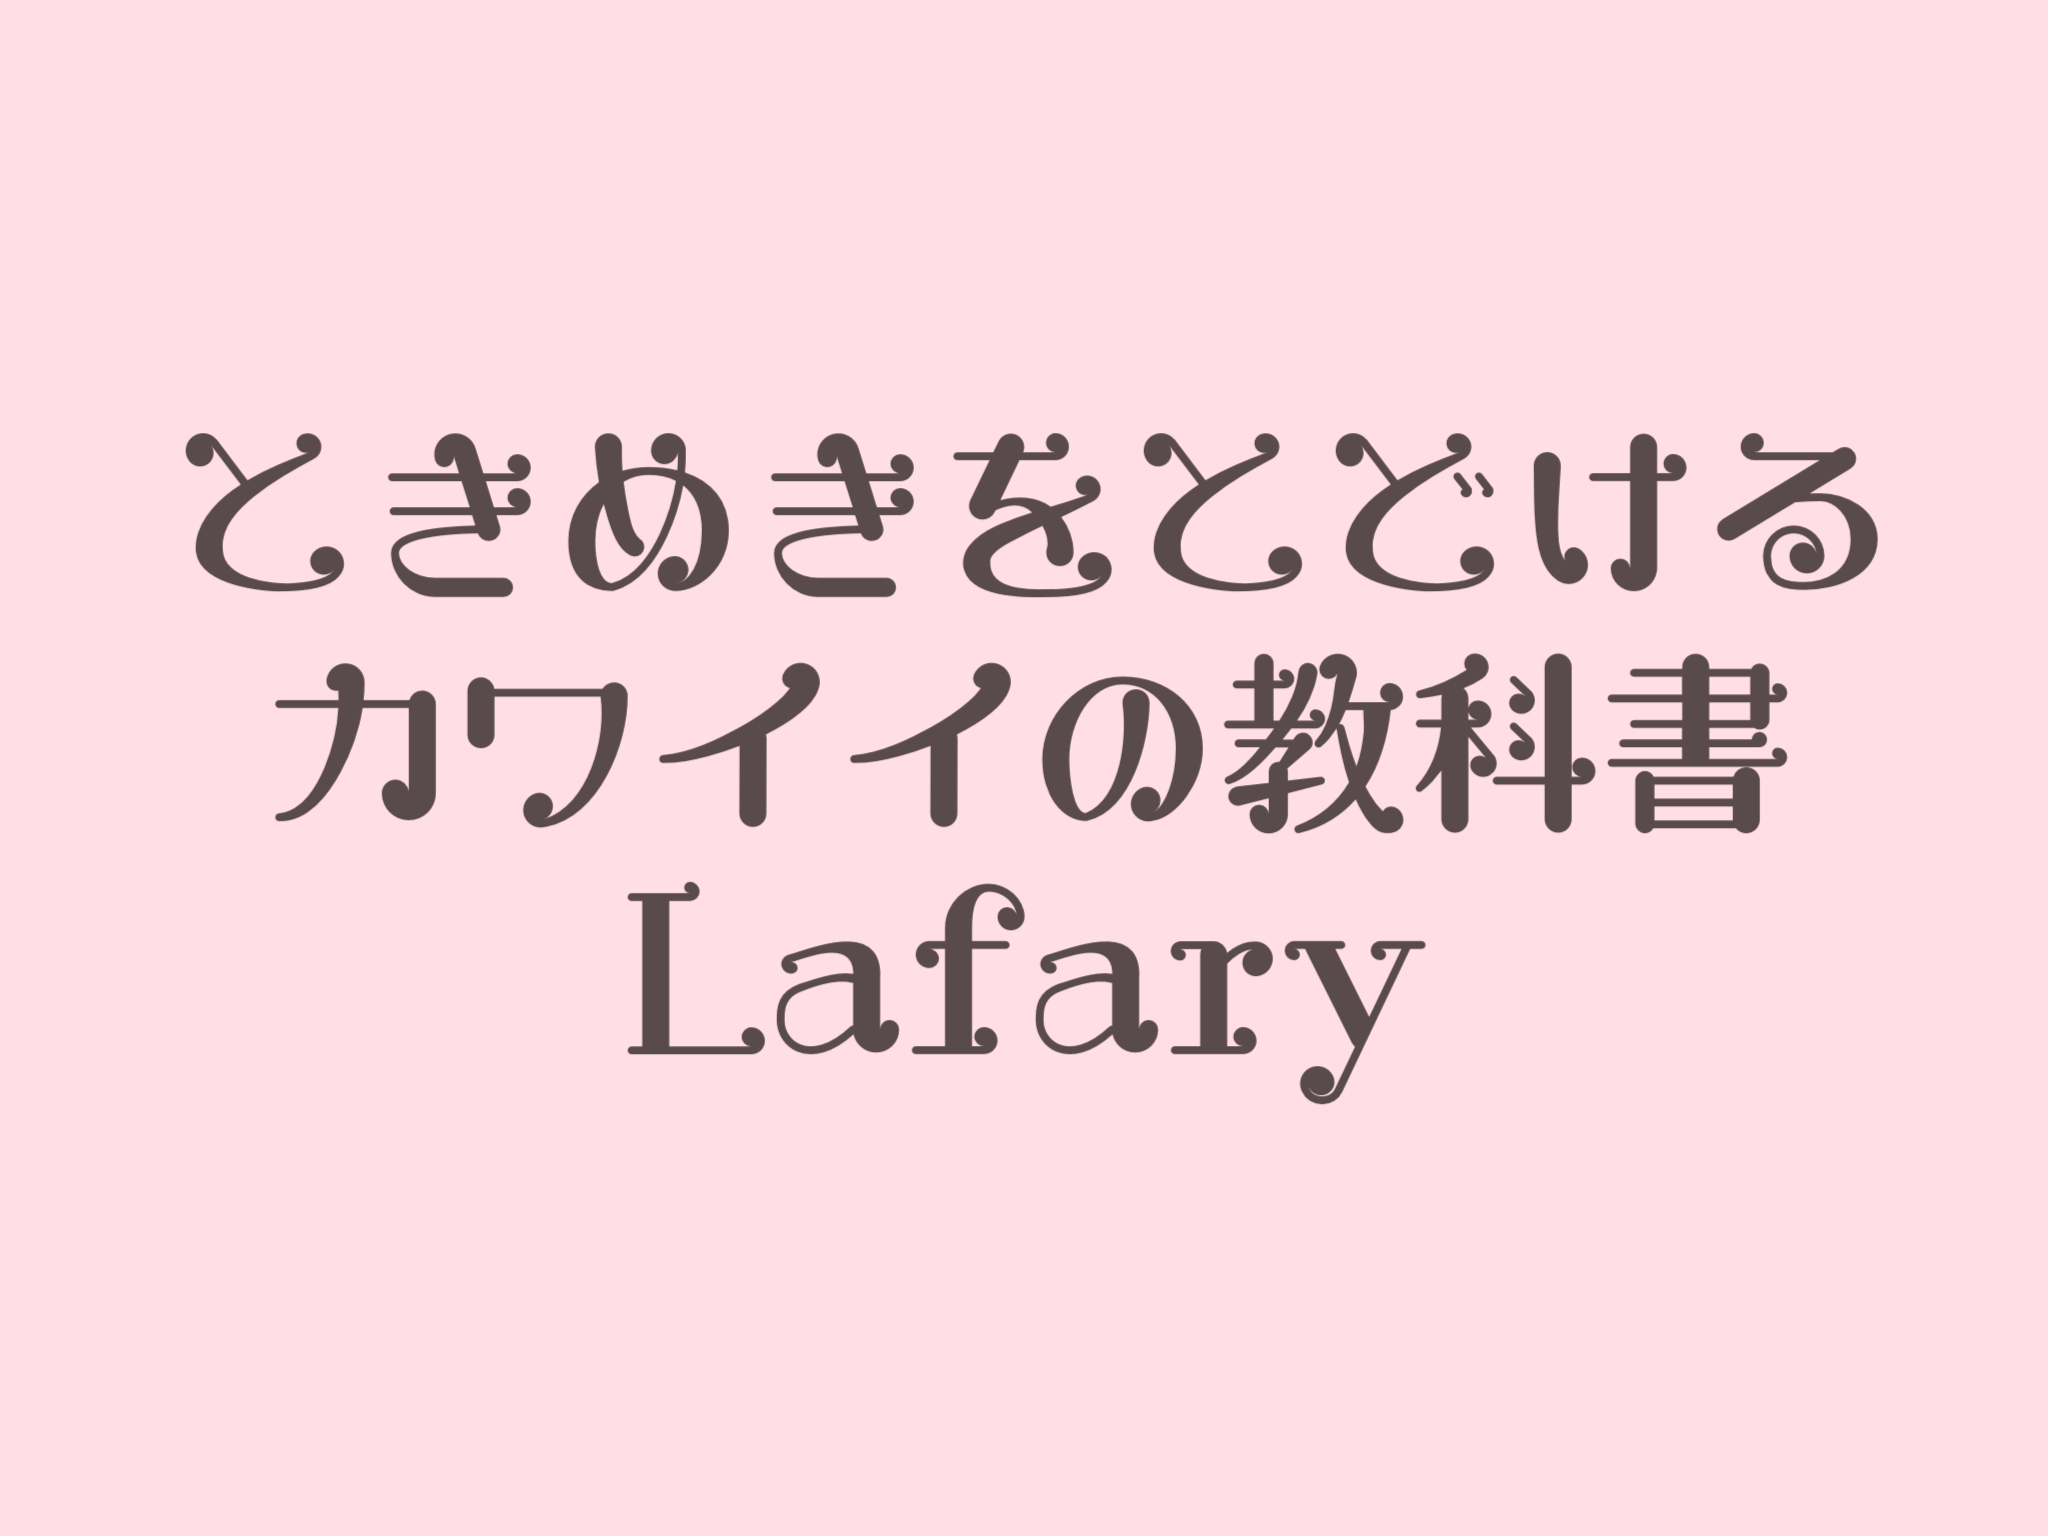 無料 商用okを厳選 おすすめの可愛い日本語フォント40種類 Lafary ラファリー ときめきを届けるかわいいの教科書